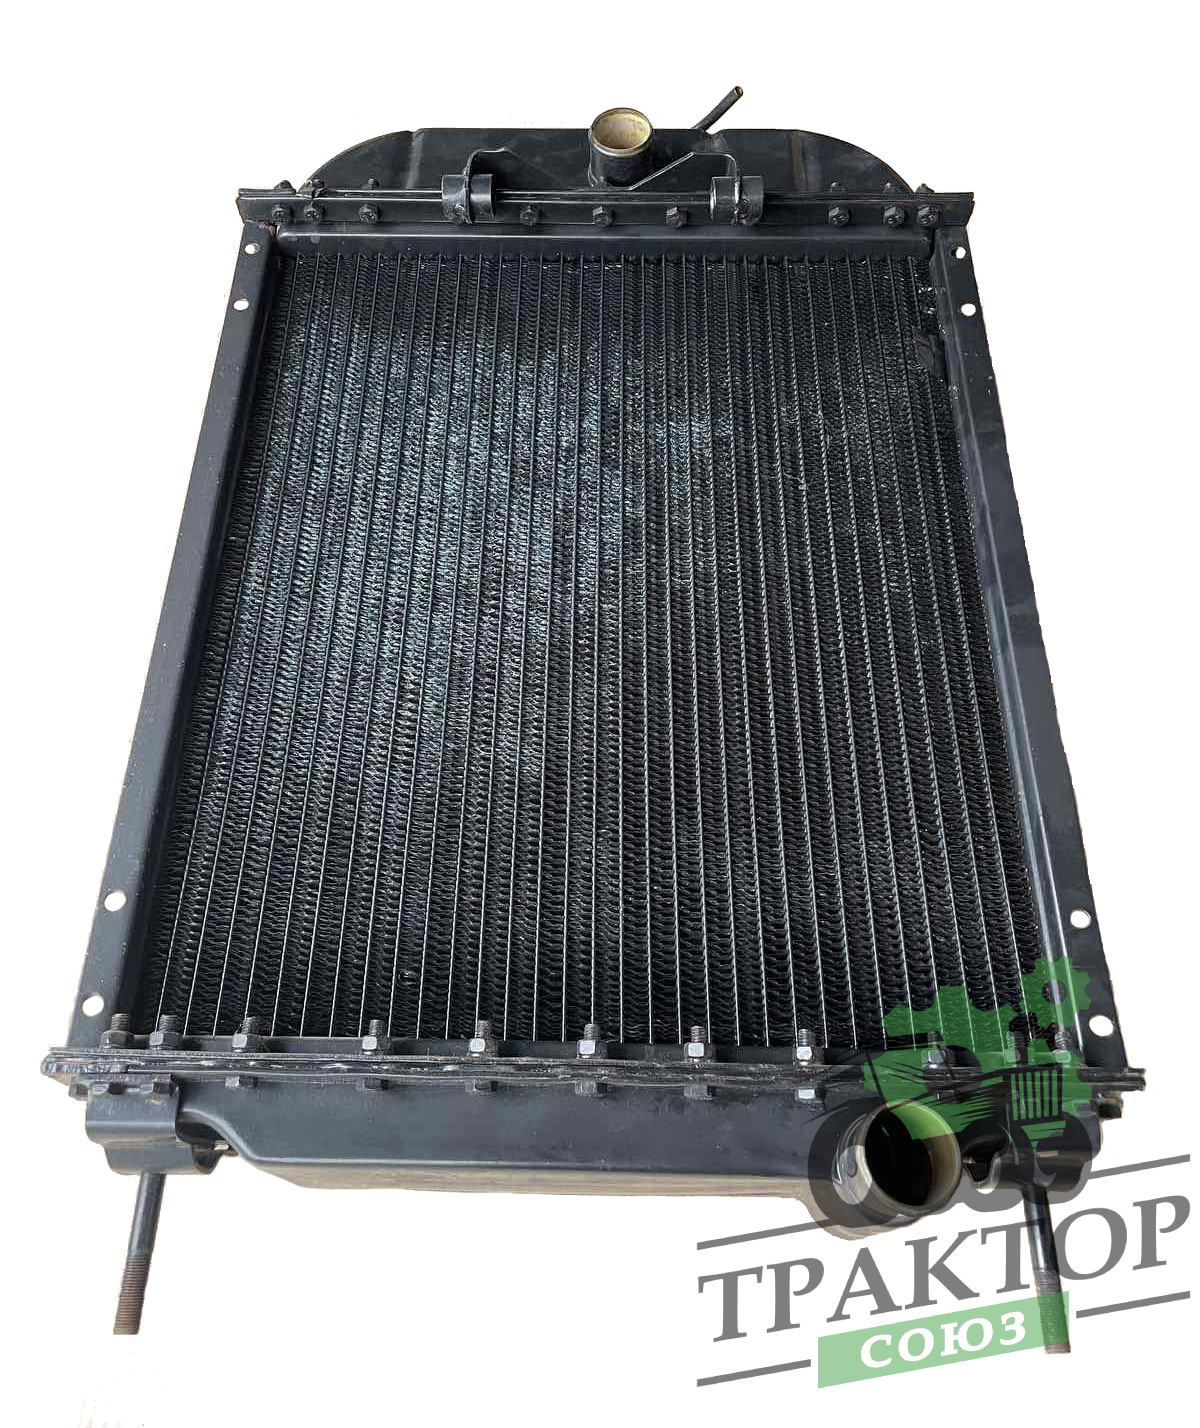 Радиатор ЮМЗ латуный 4-х рядный Украина 45-1301015-02